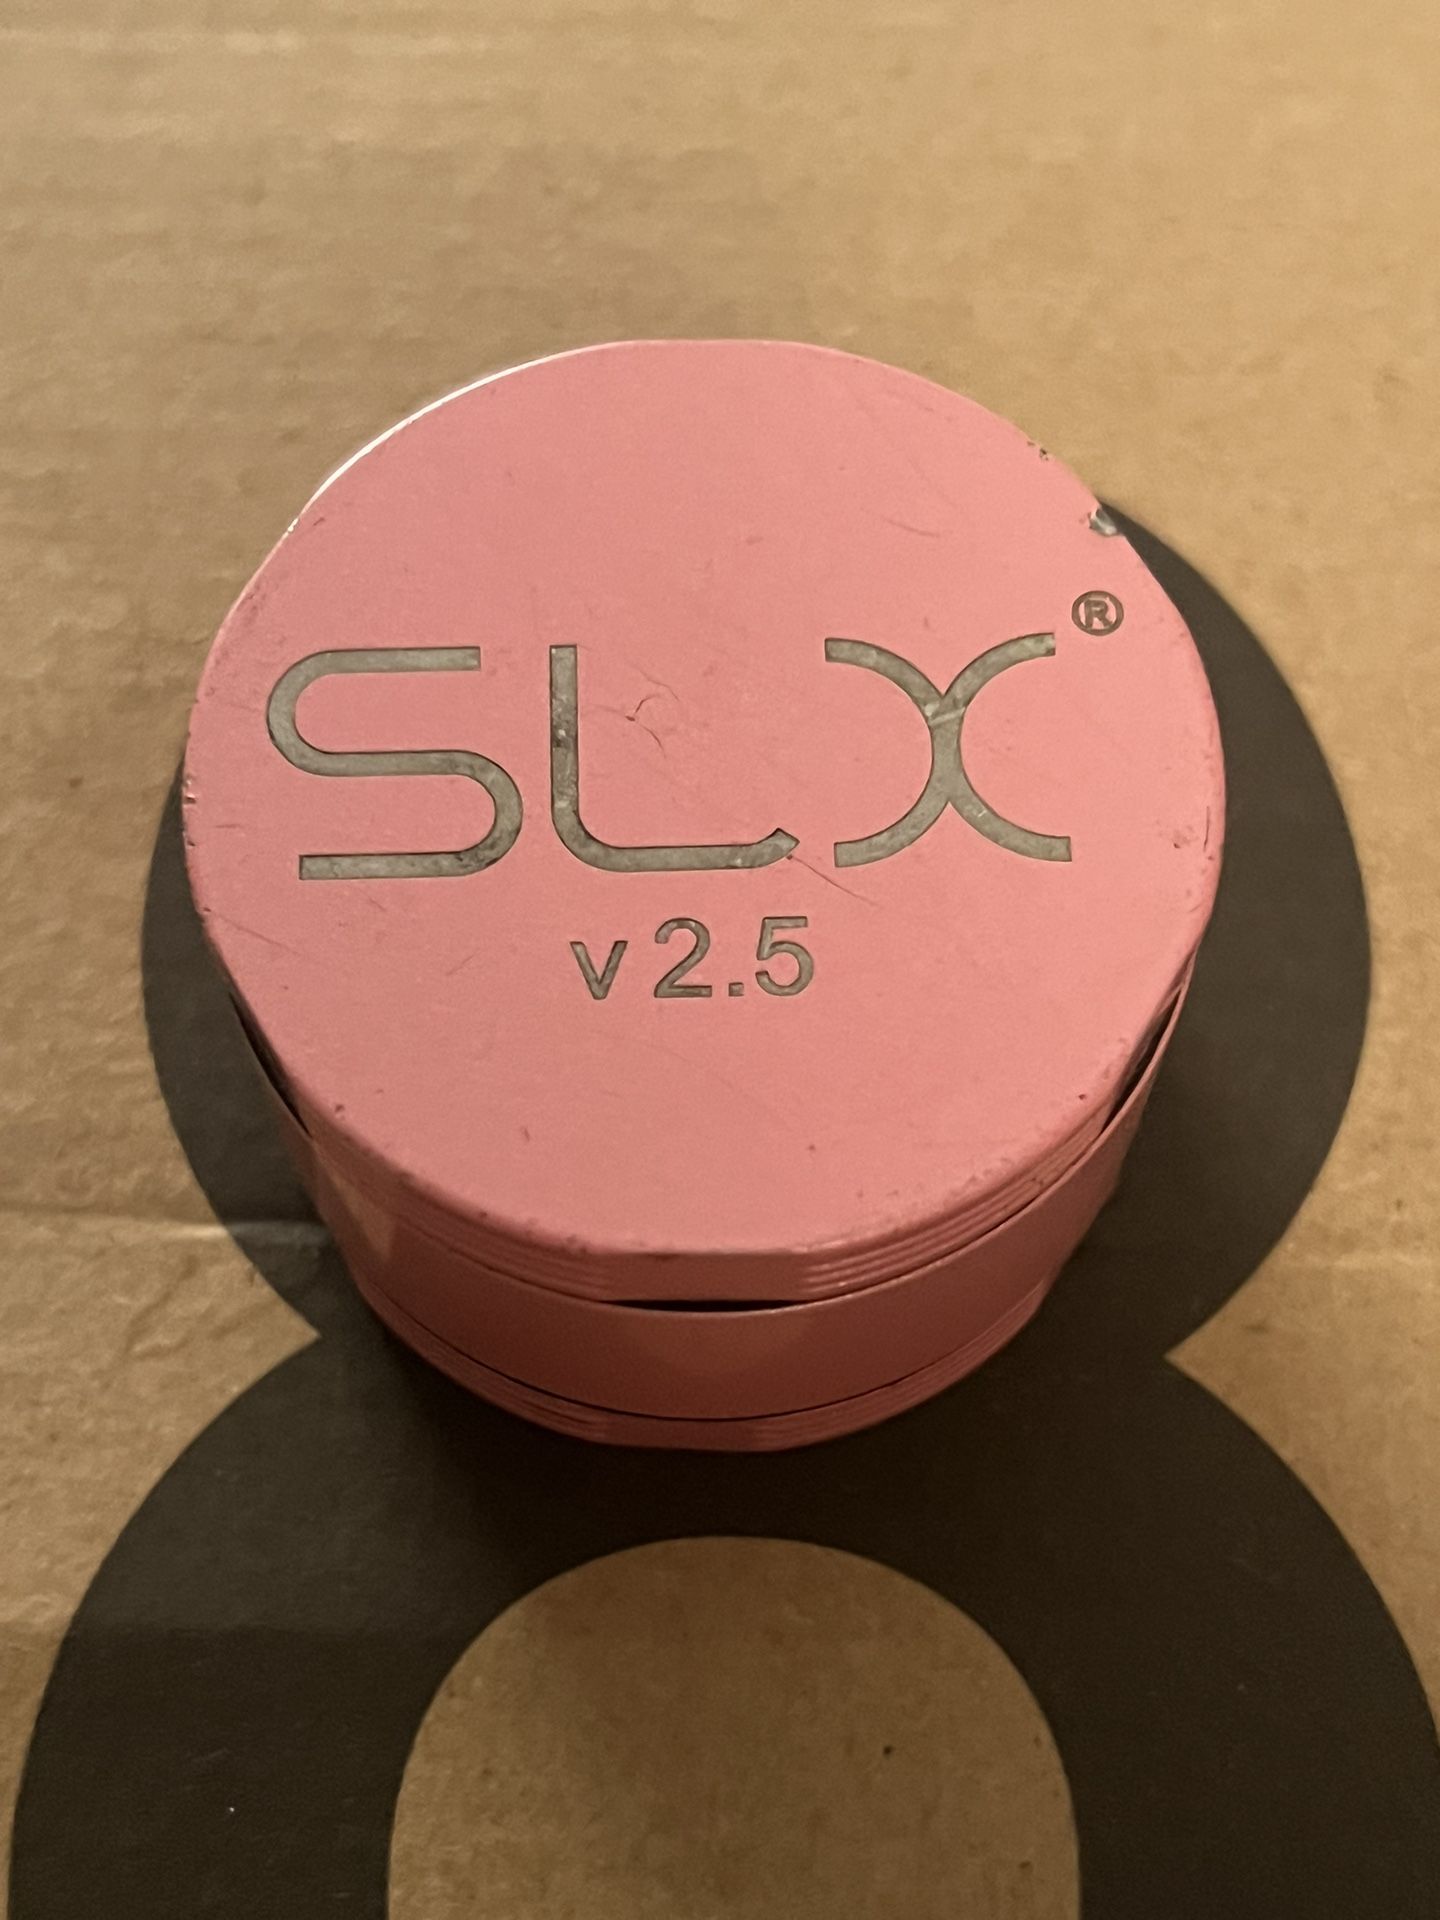 SLX v 2.5